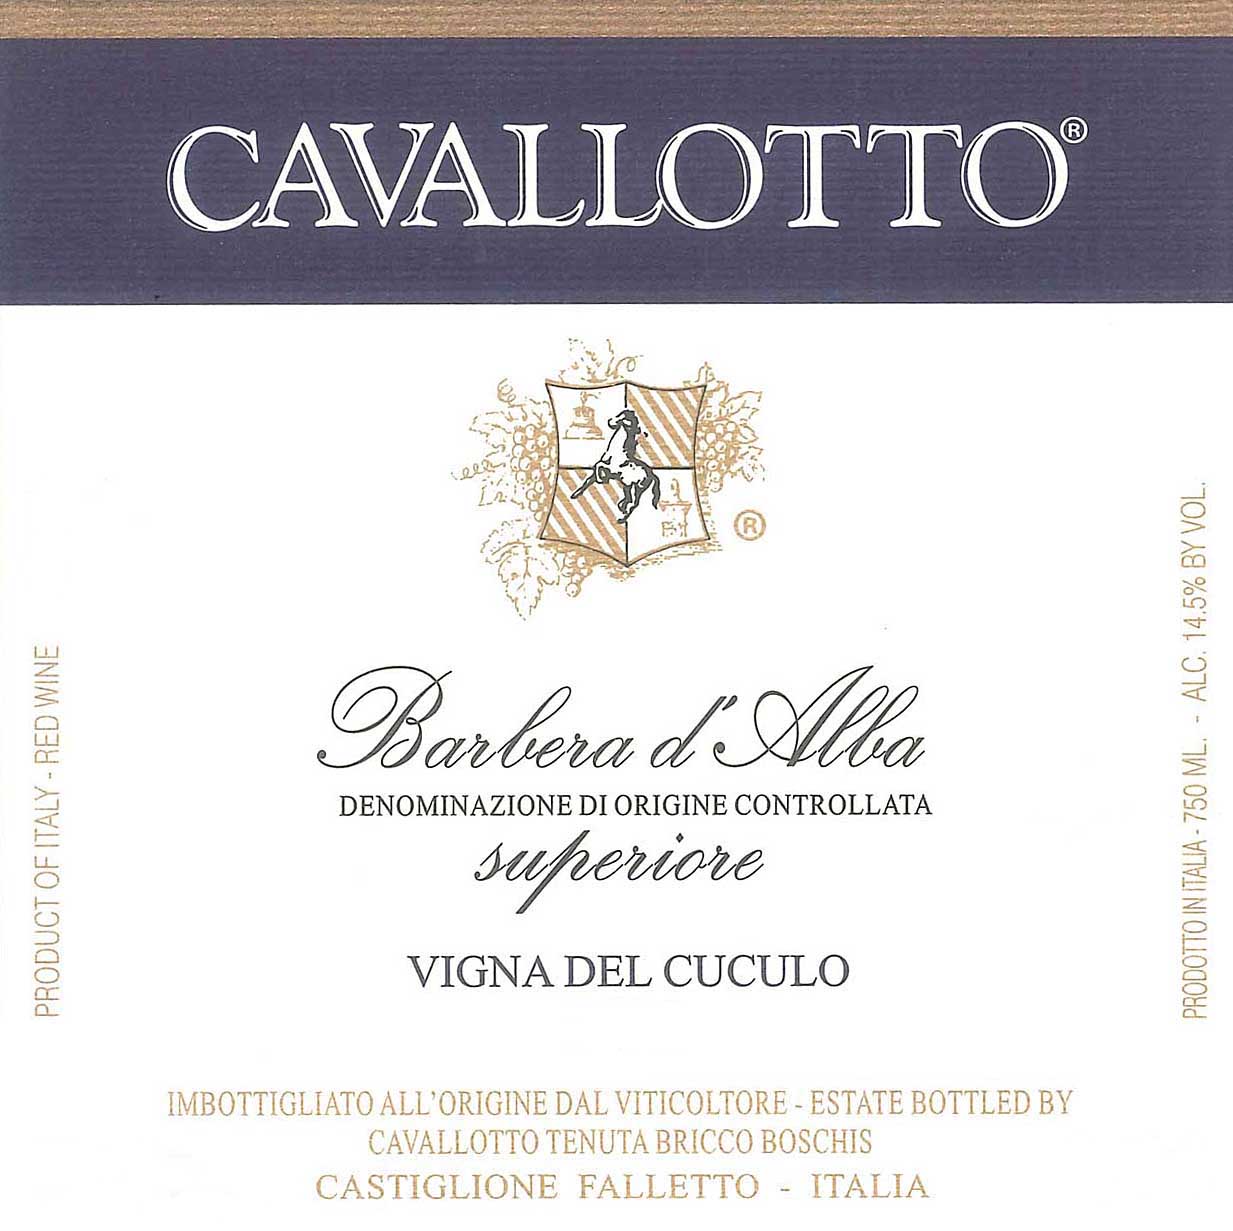 Cavallotto - Barbera d'Alba label